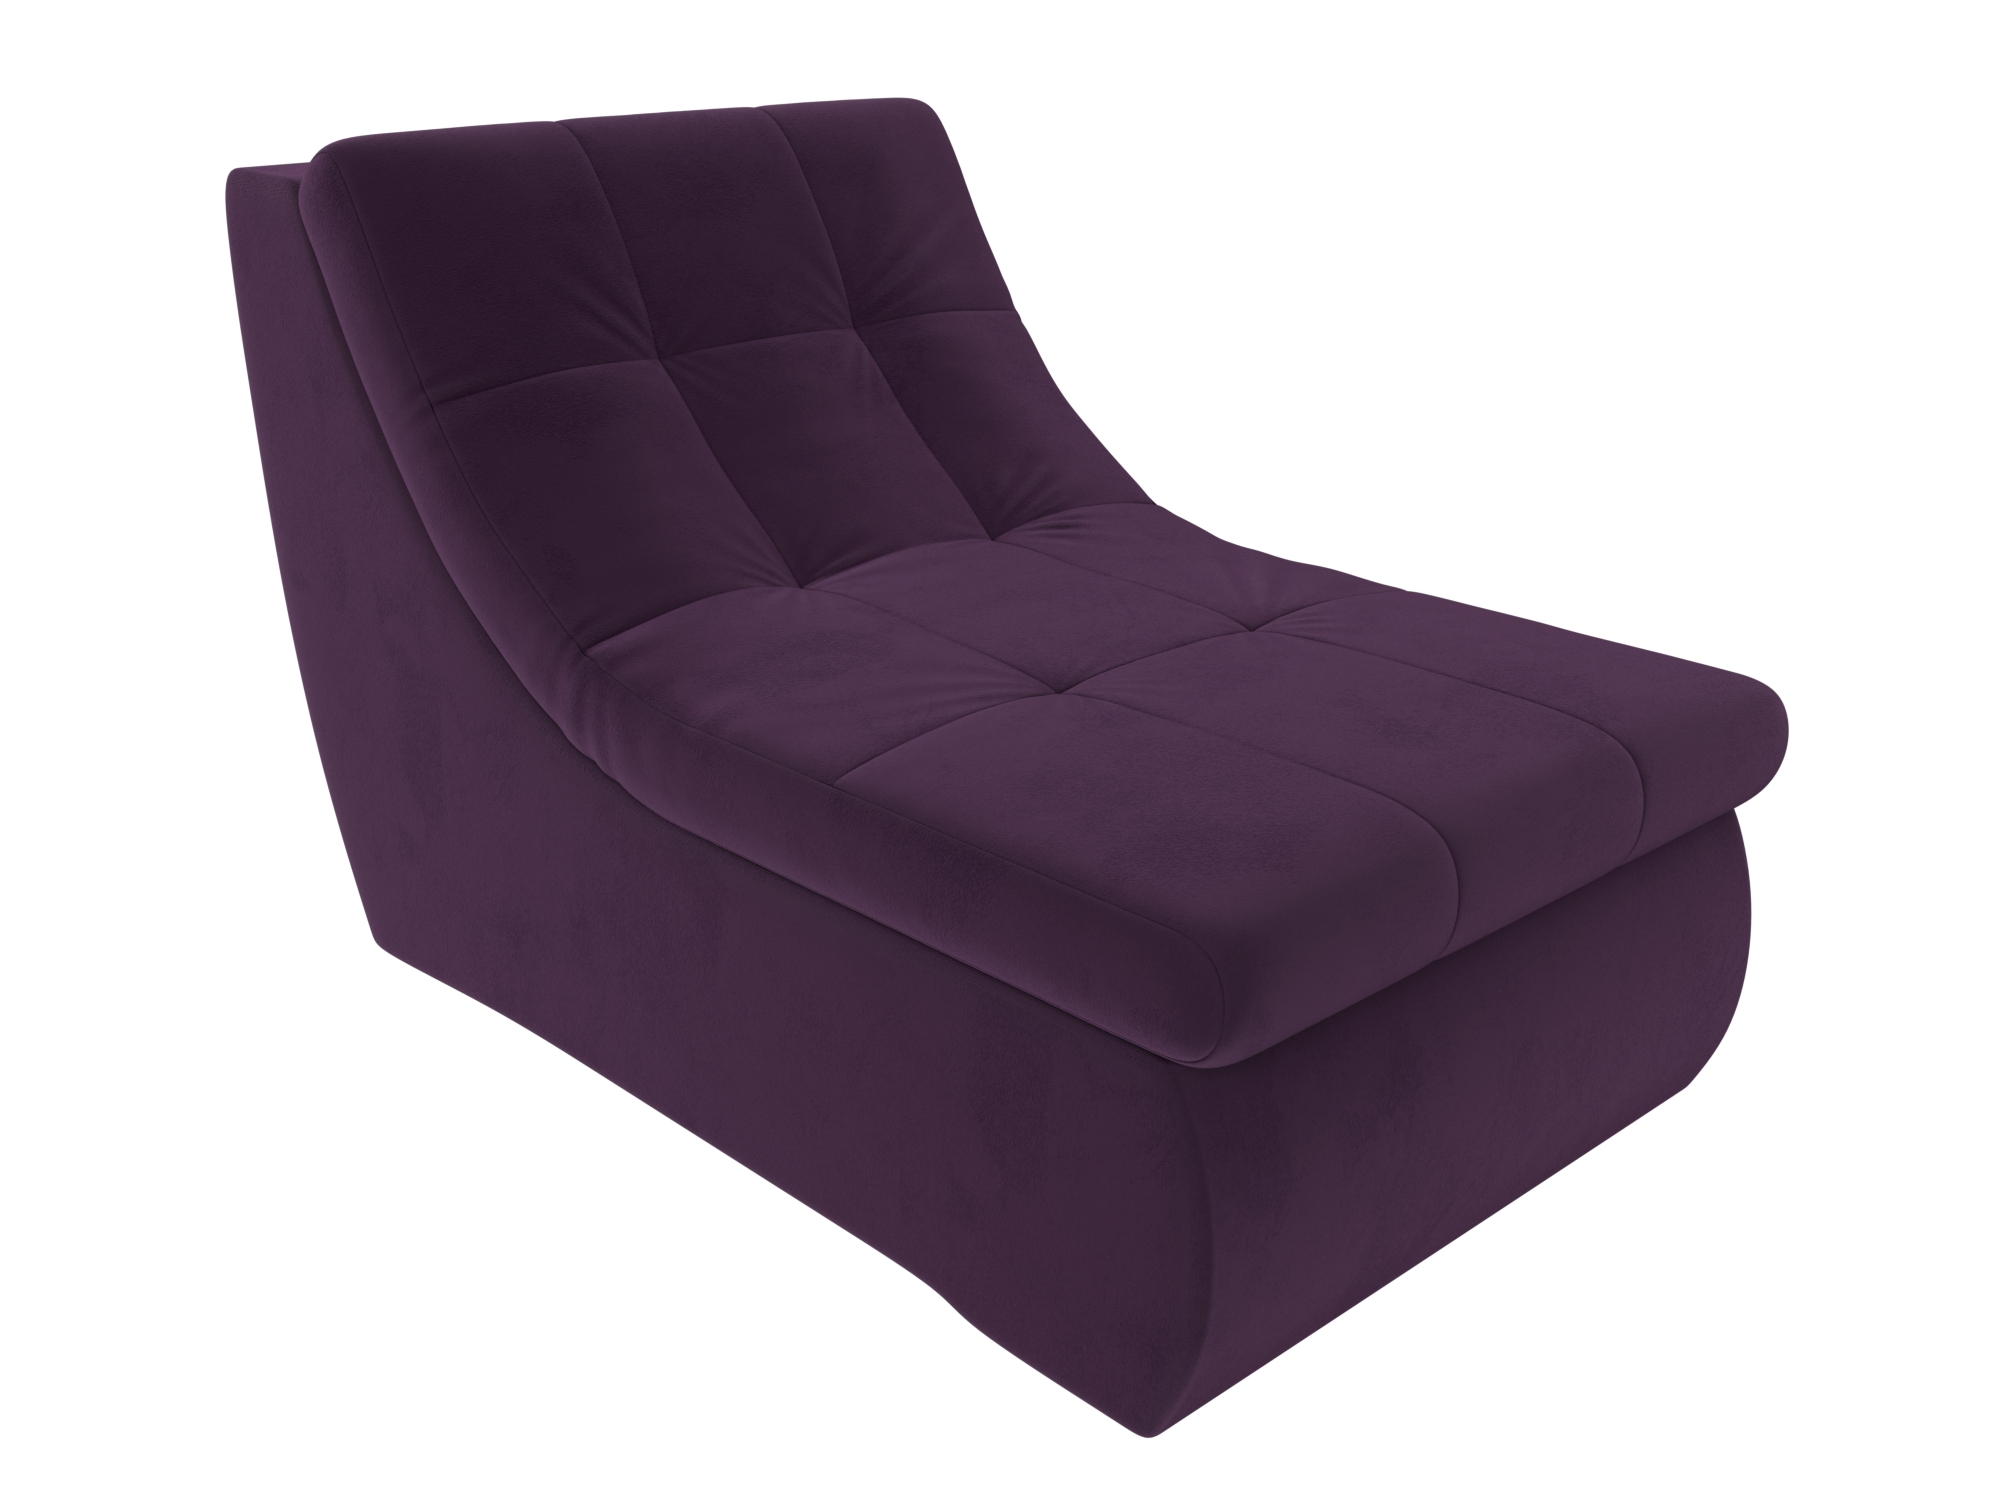 Модуль Холидей кресло Фиолетовый